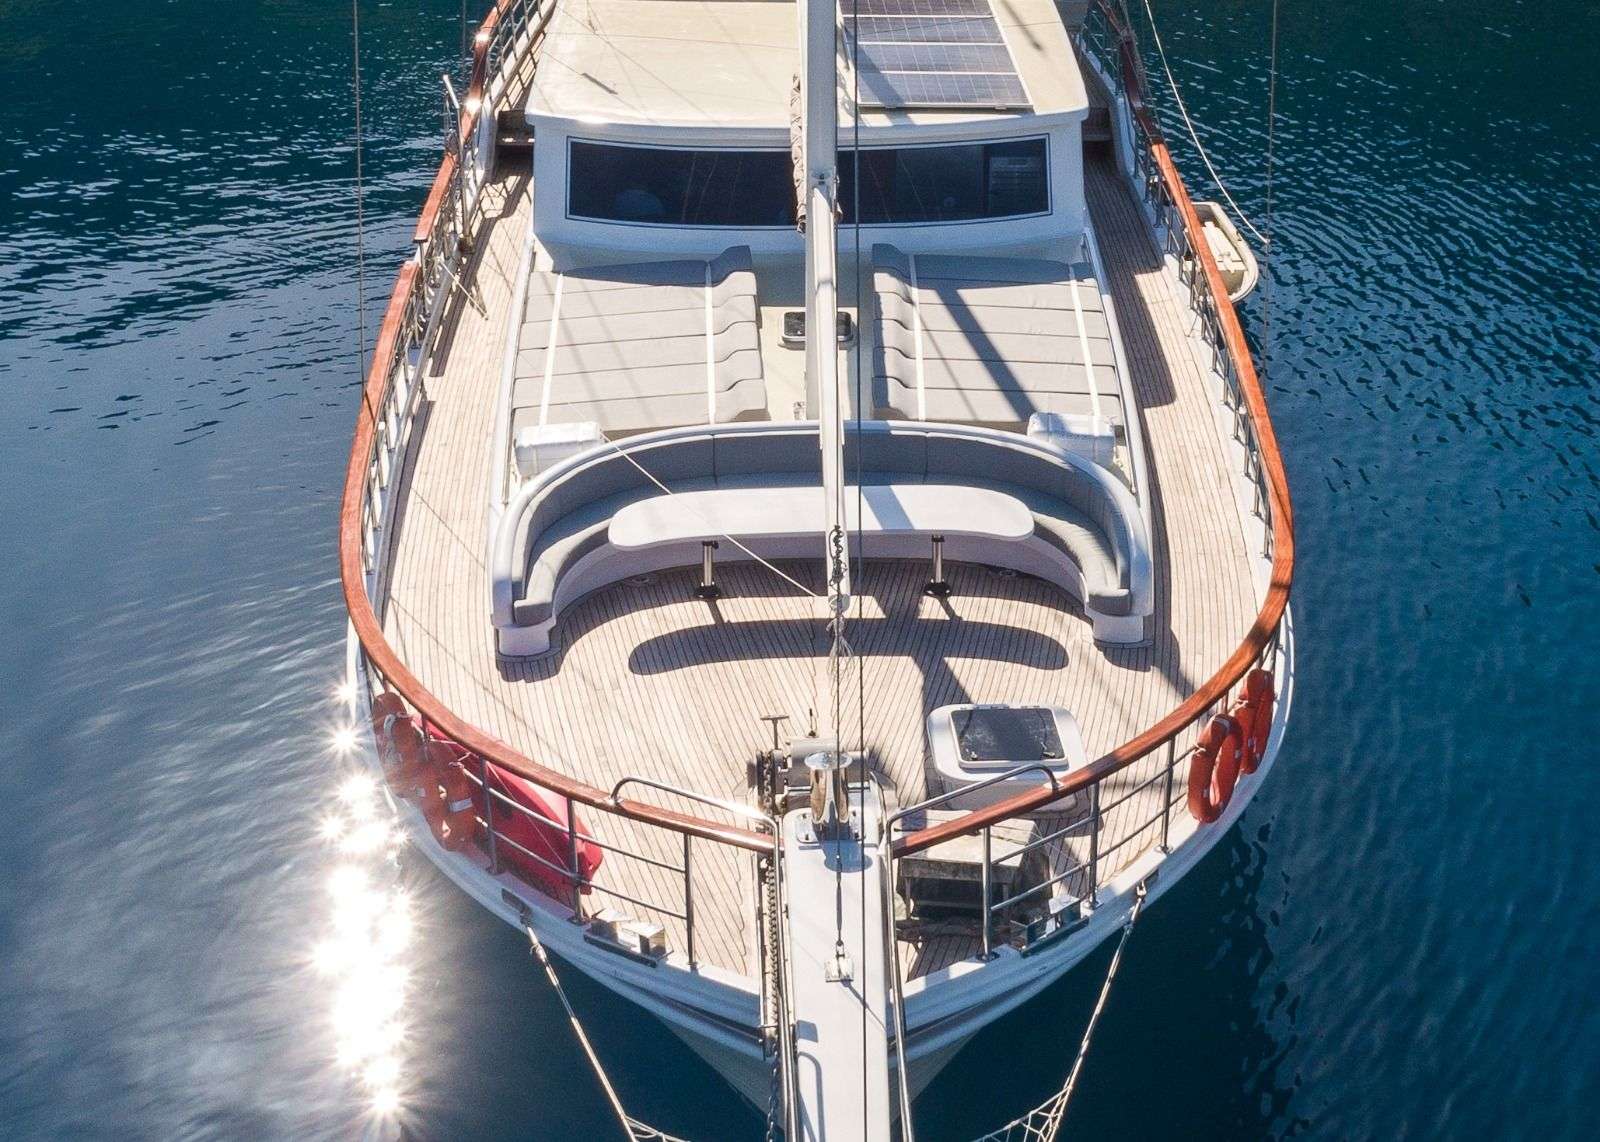 koray ege - Motor Boat Charter Turkey & Boat hire in Greece & Turkey 6